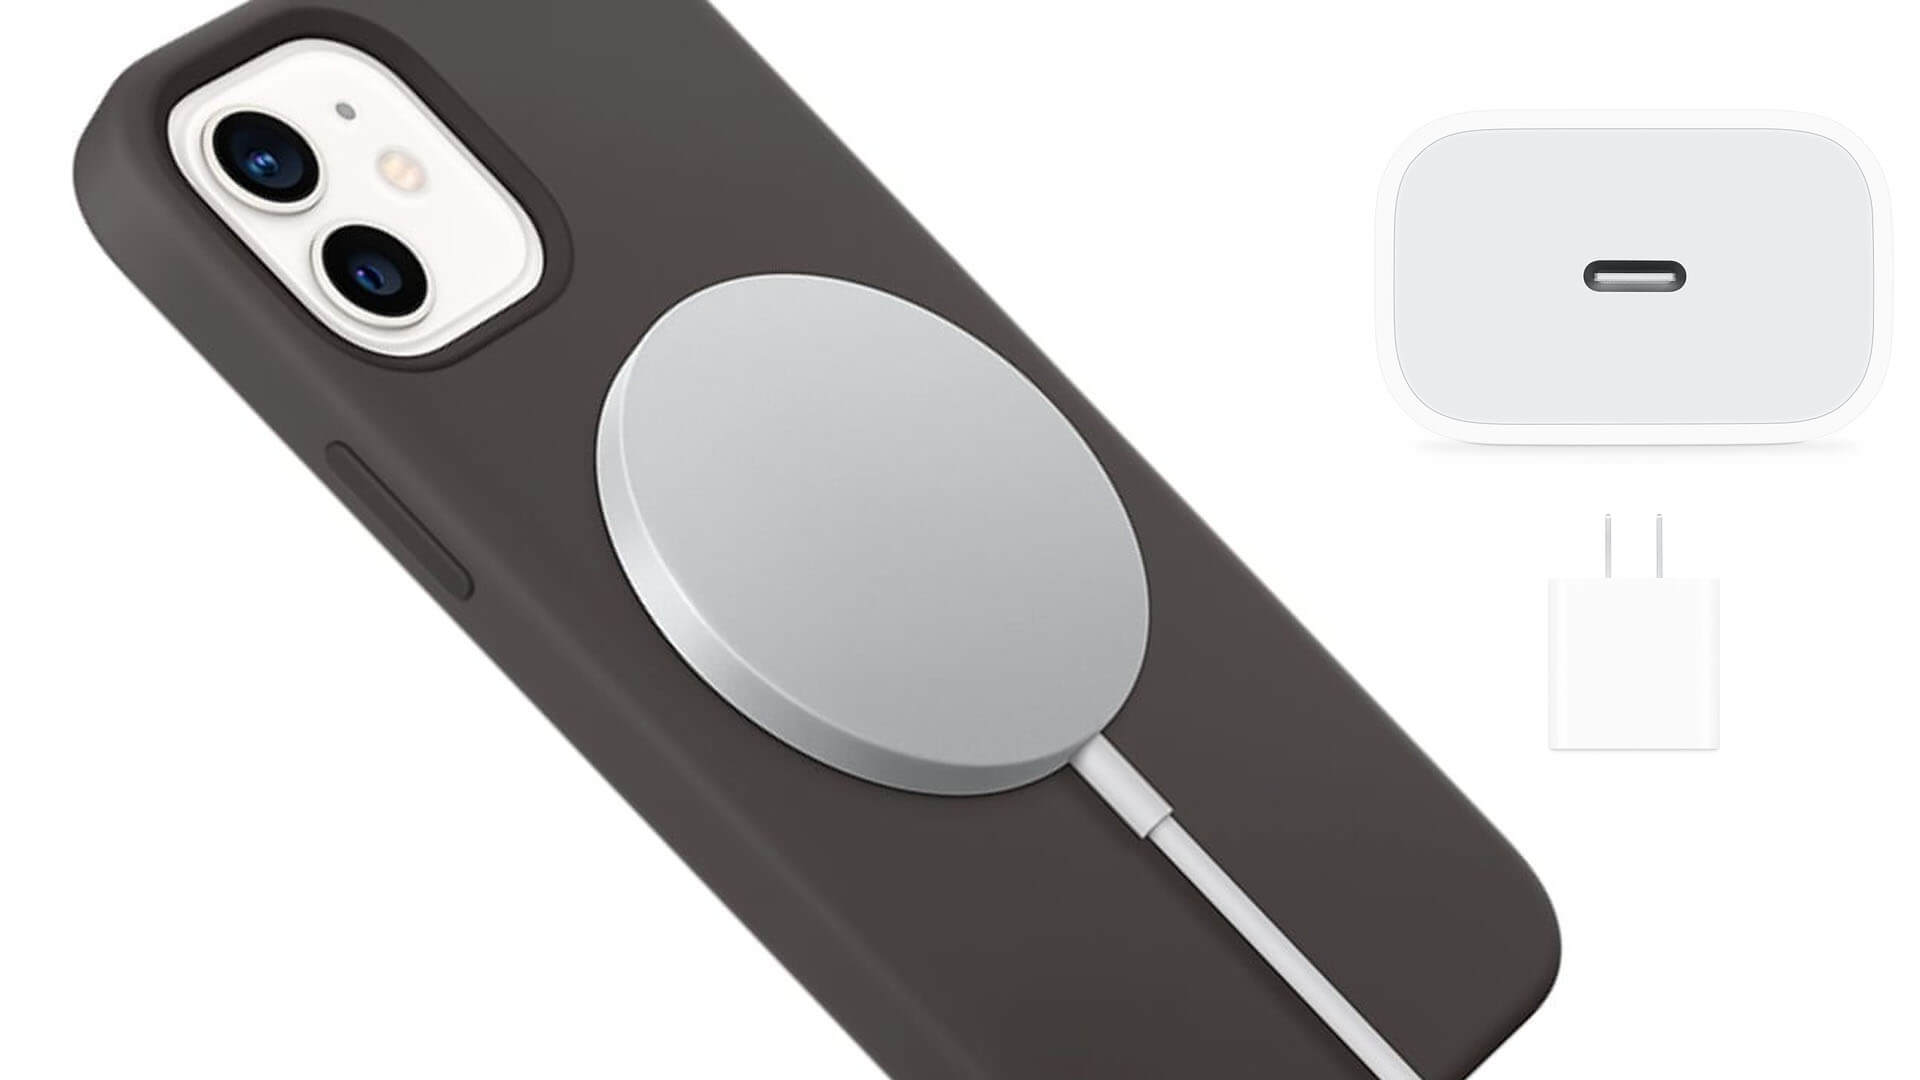 Yeni MagSafe Kablosuz Şarj Aleti Sadece Apple’ın 20 Watt’lık Adaptörüyle 15 Watt Şarj Edebiliyor!